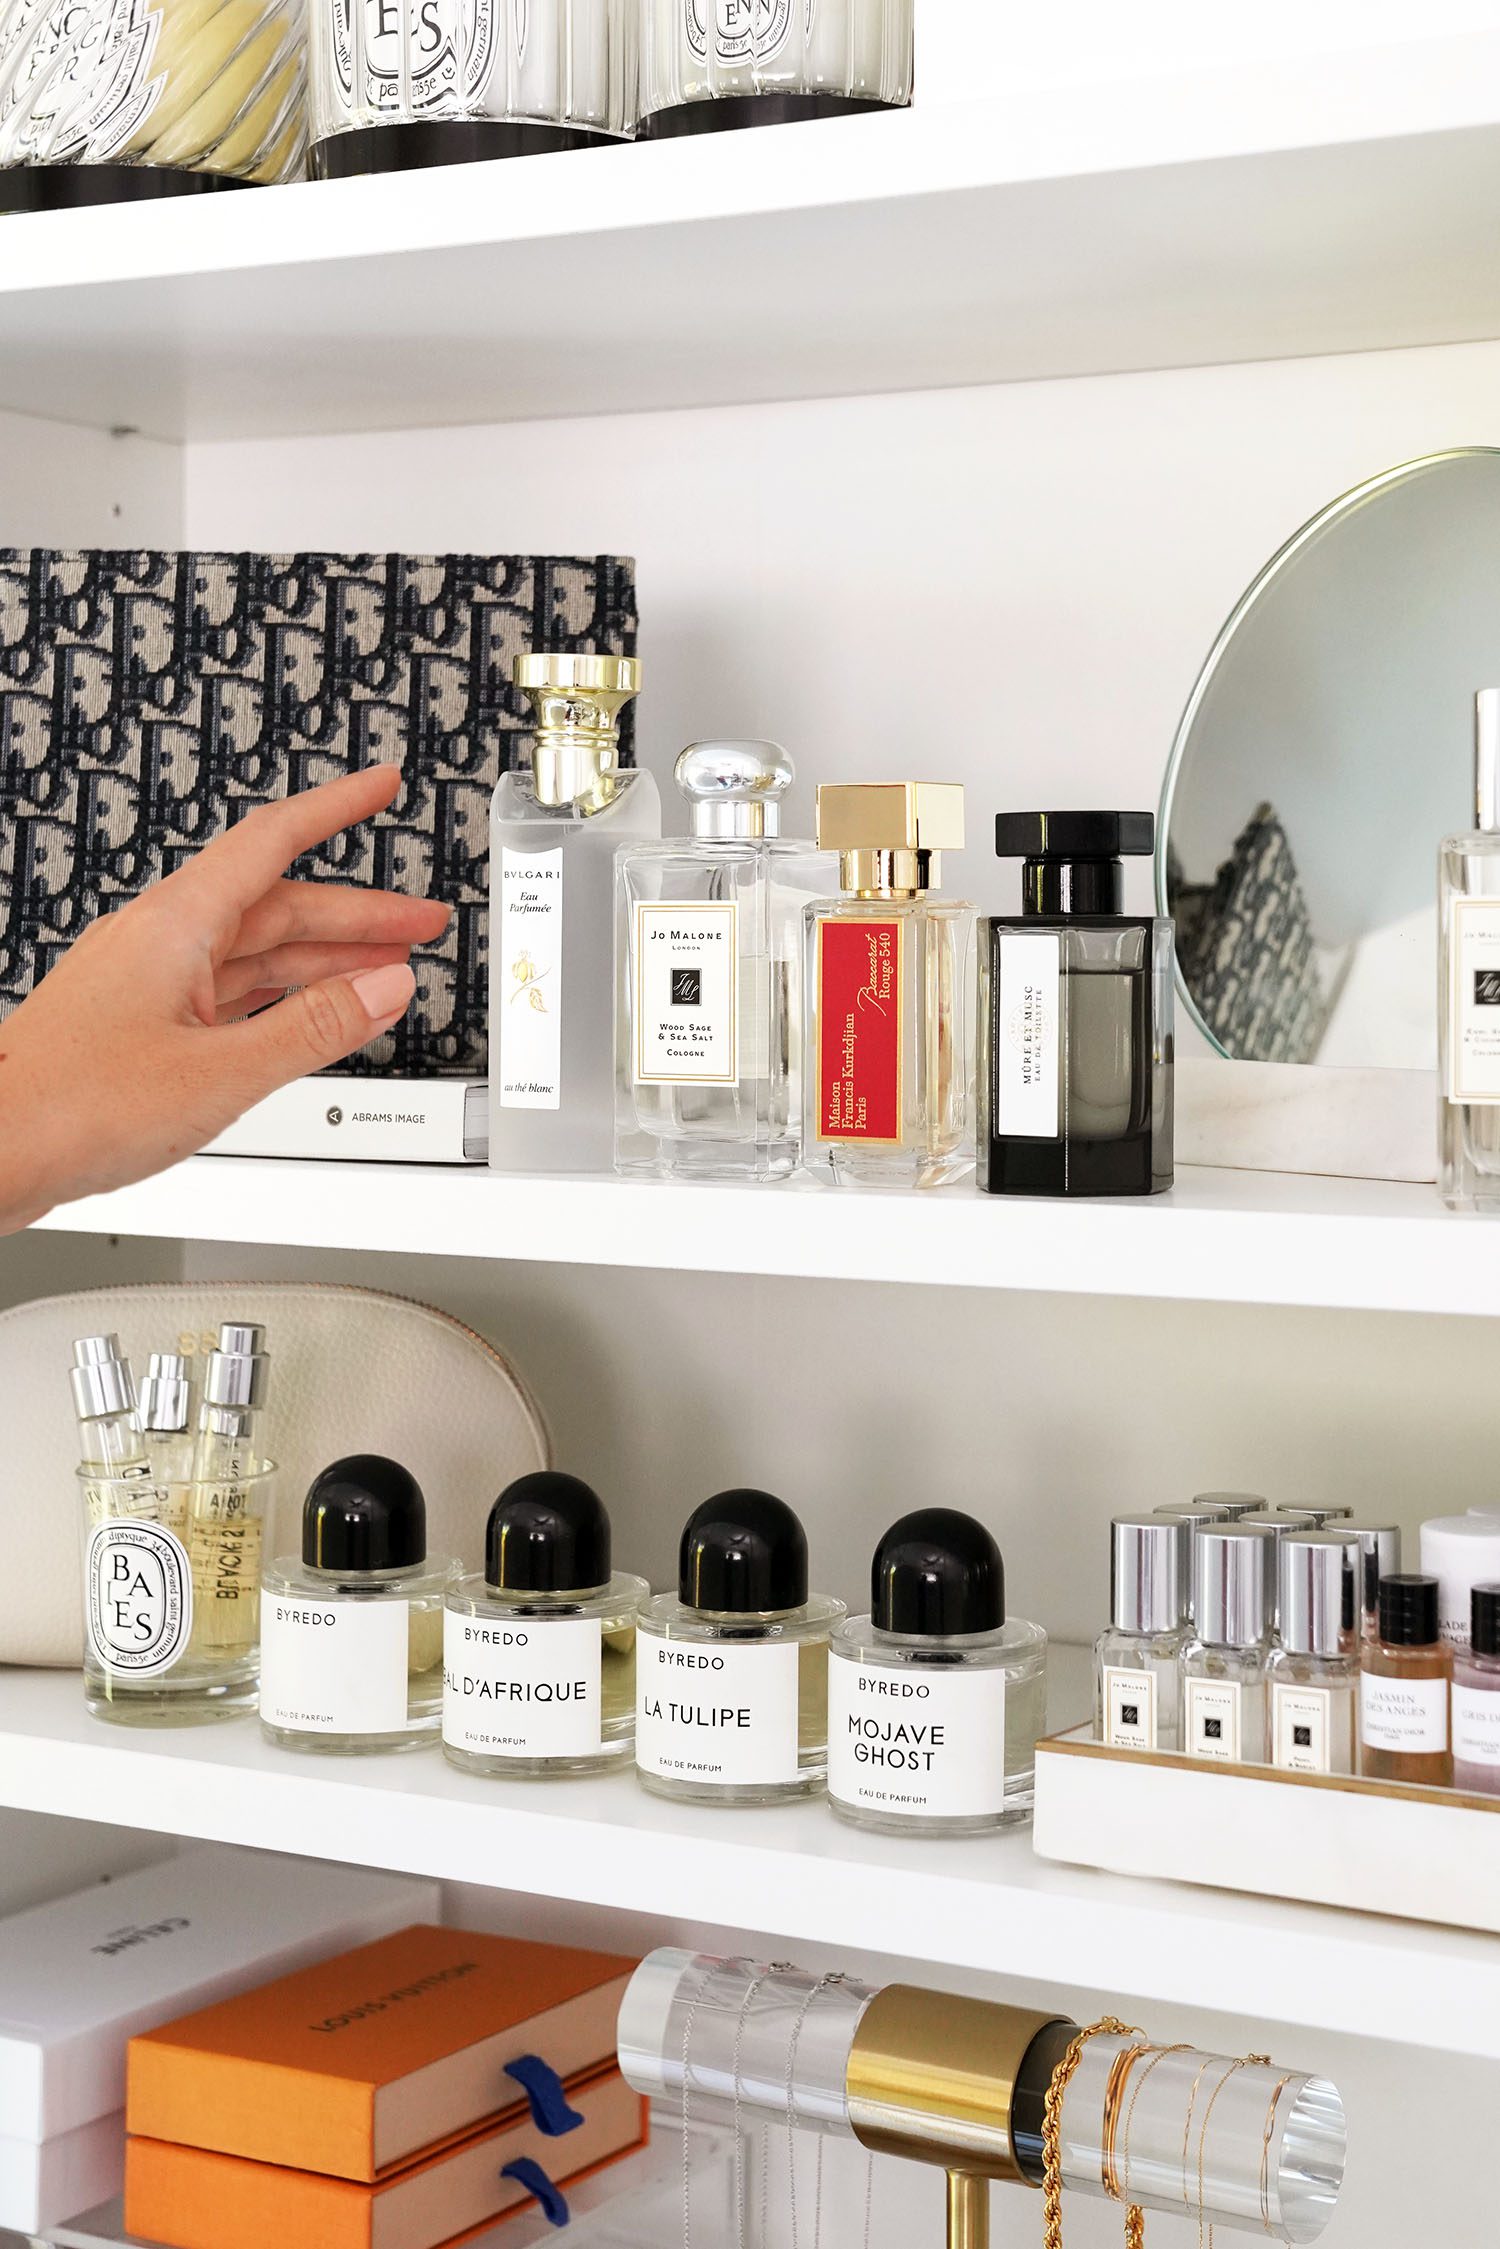 Maison Francis Kurkdjian - 10 Best Fragrances pick For Women